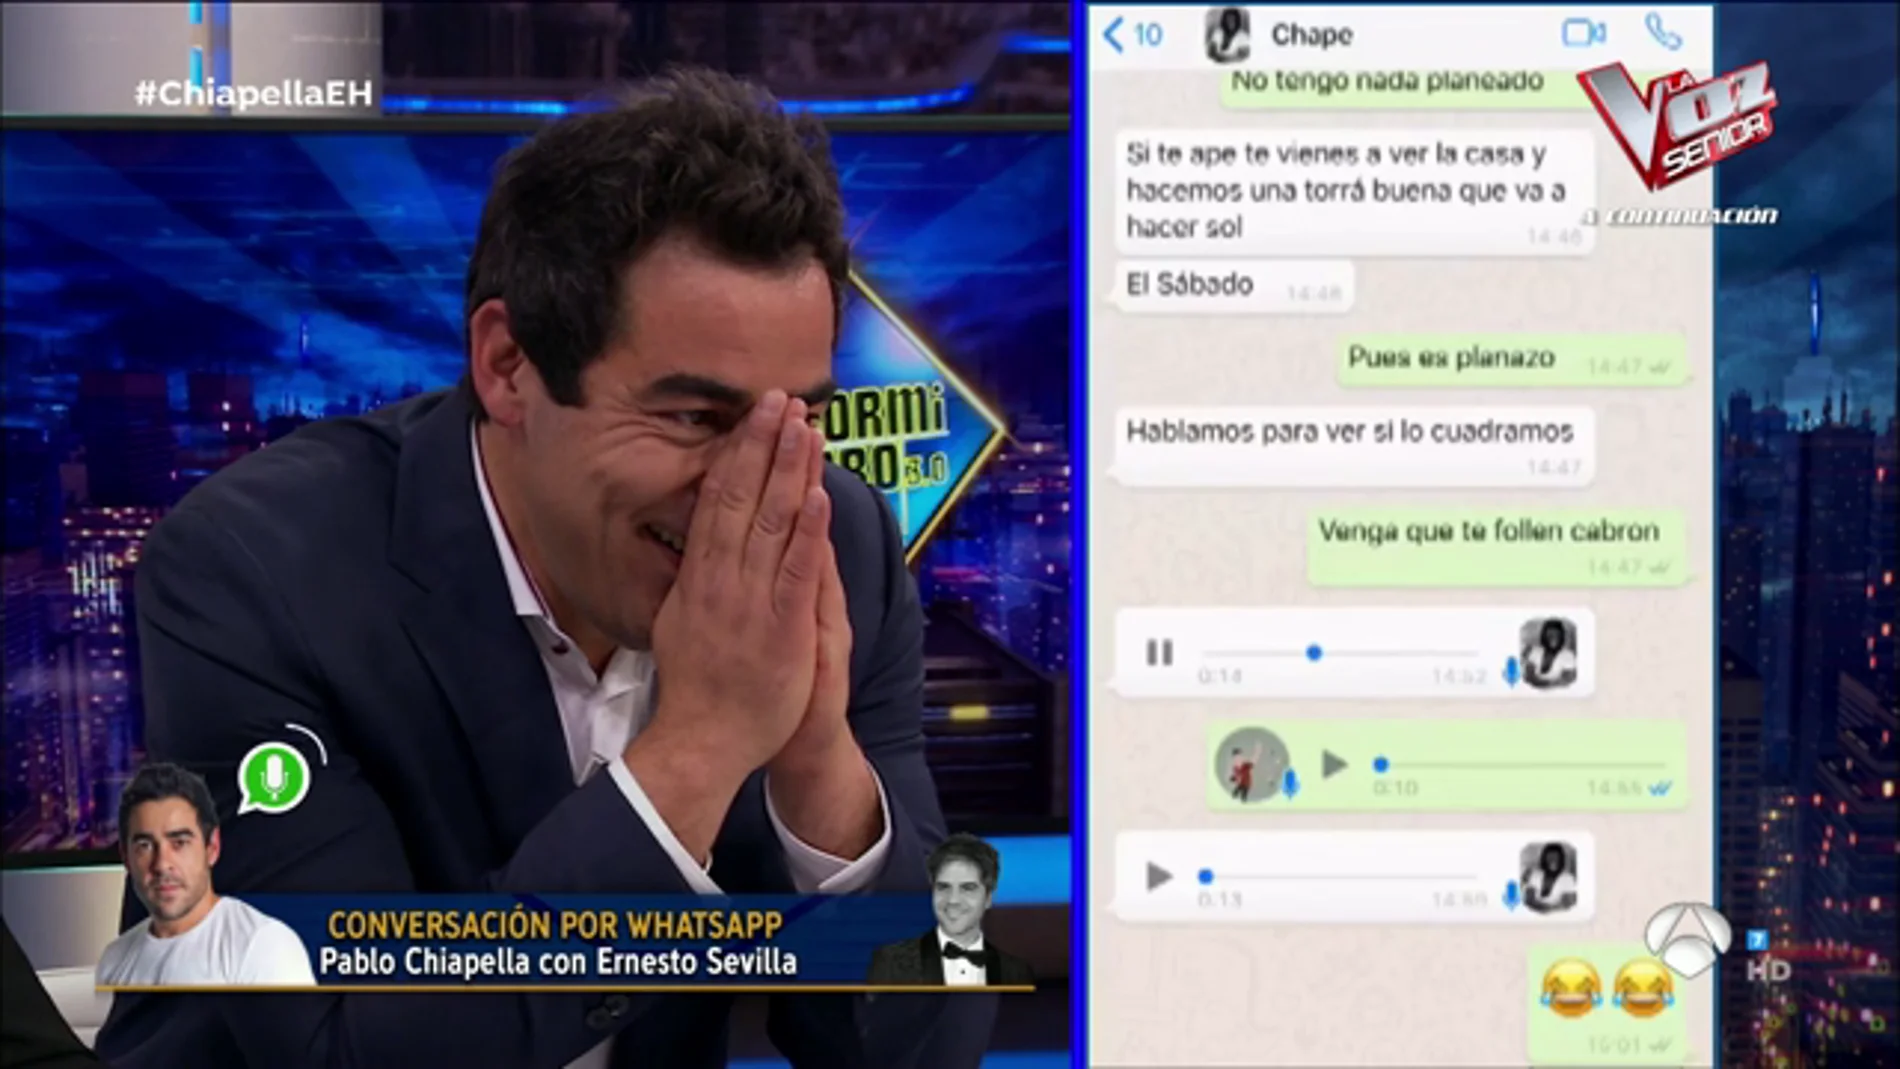 La conversación por WhatsApp de Pablo Chiapella con Ernesto Sevilla